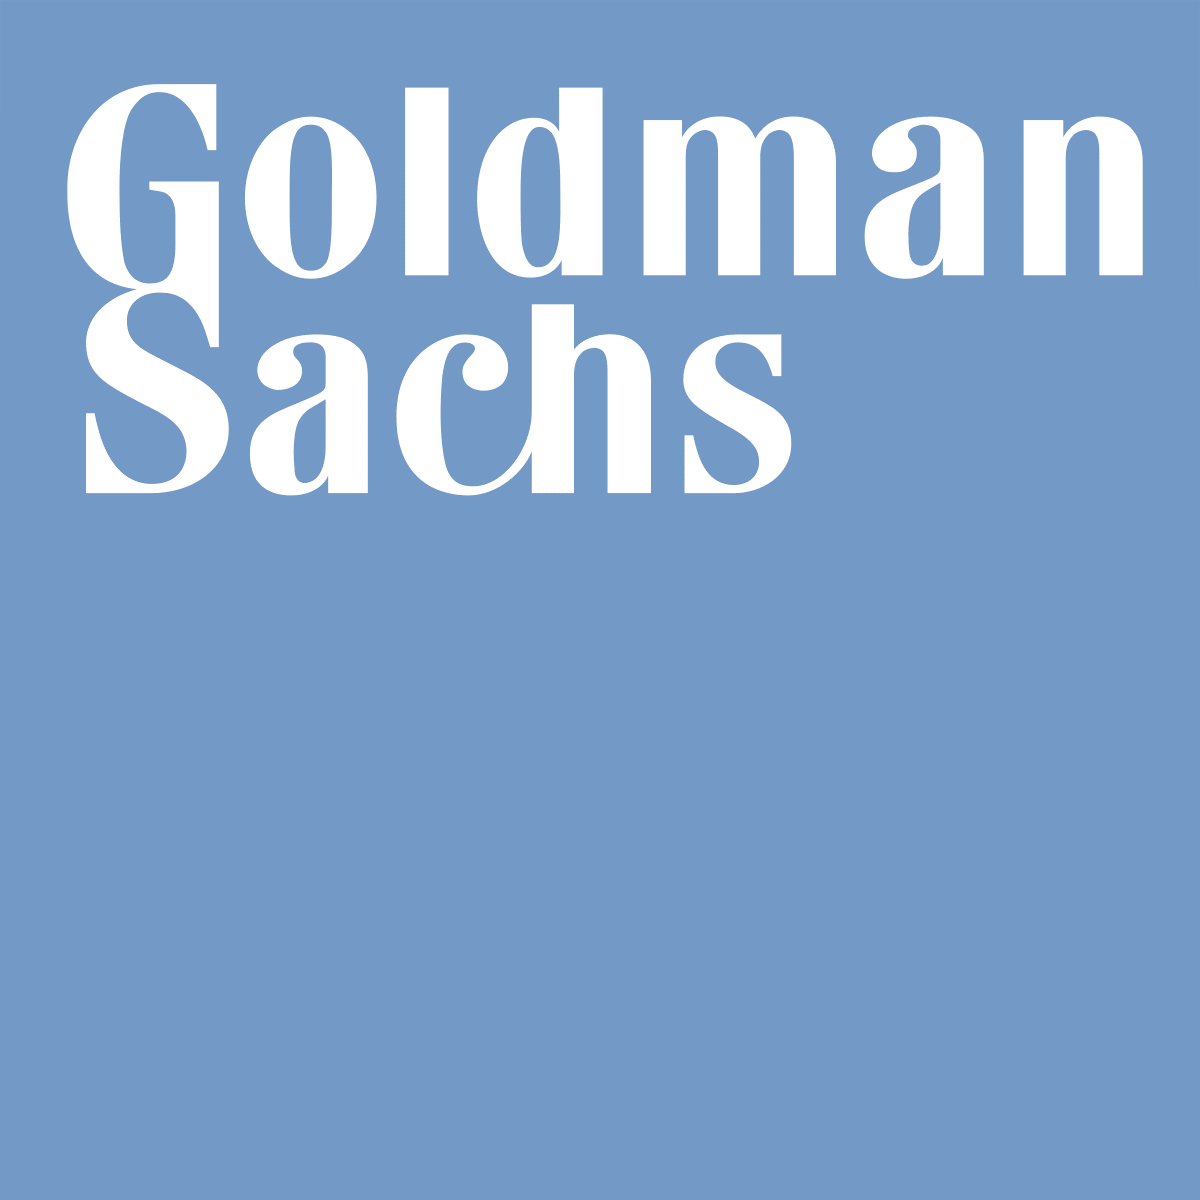 Goldman Sachs börjar med att hjälpa kapitalförvaltare att lansera ETFer genom en white label lösning för börshandlade fonder.